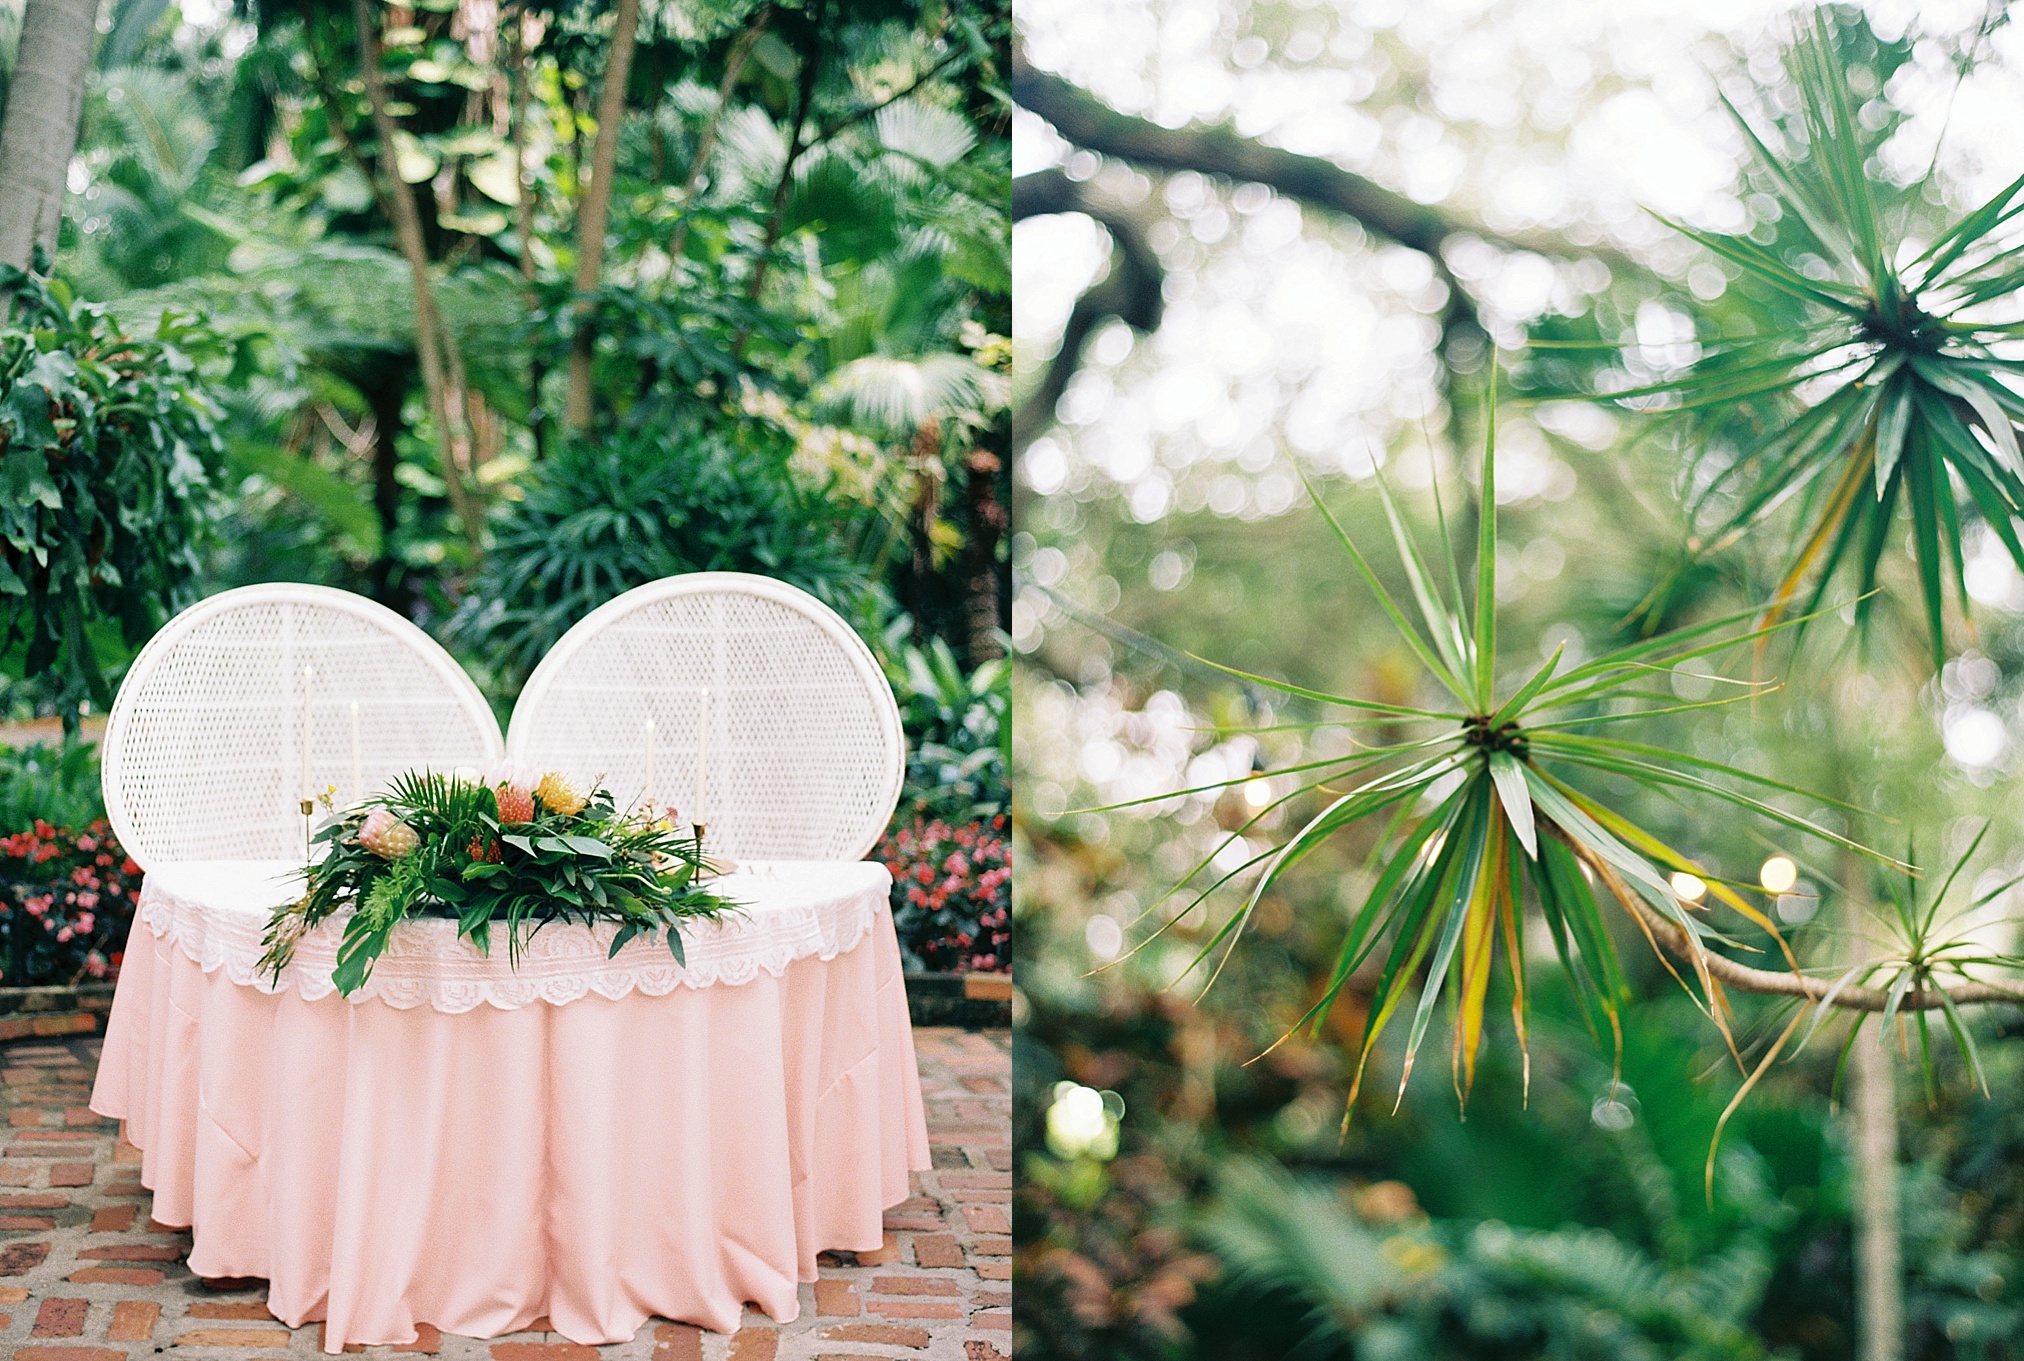 Sunken Gardens Wedding, St Petersburg Wedding Photographer, Tampa Film Wedding Photographer, Tropical wedding inspiration